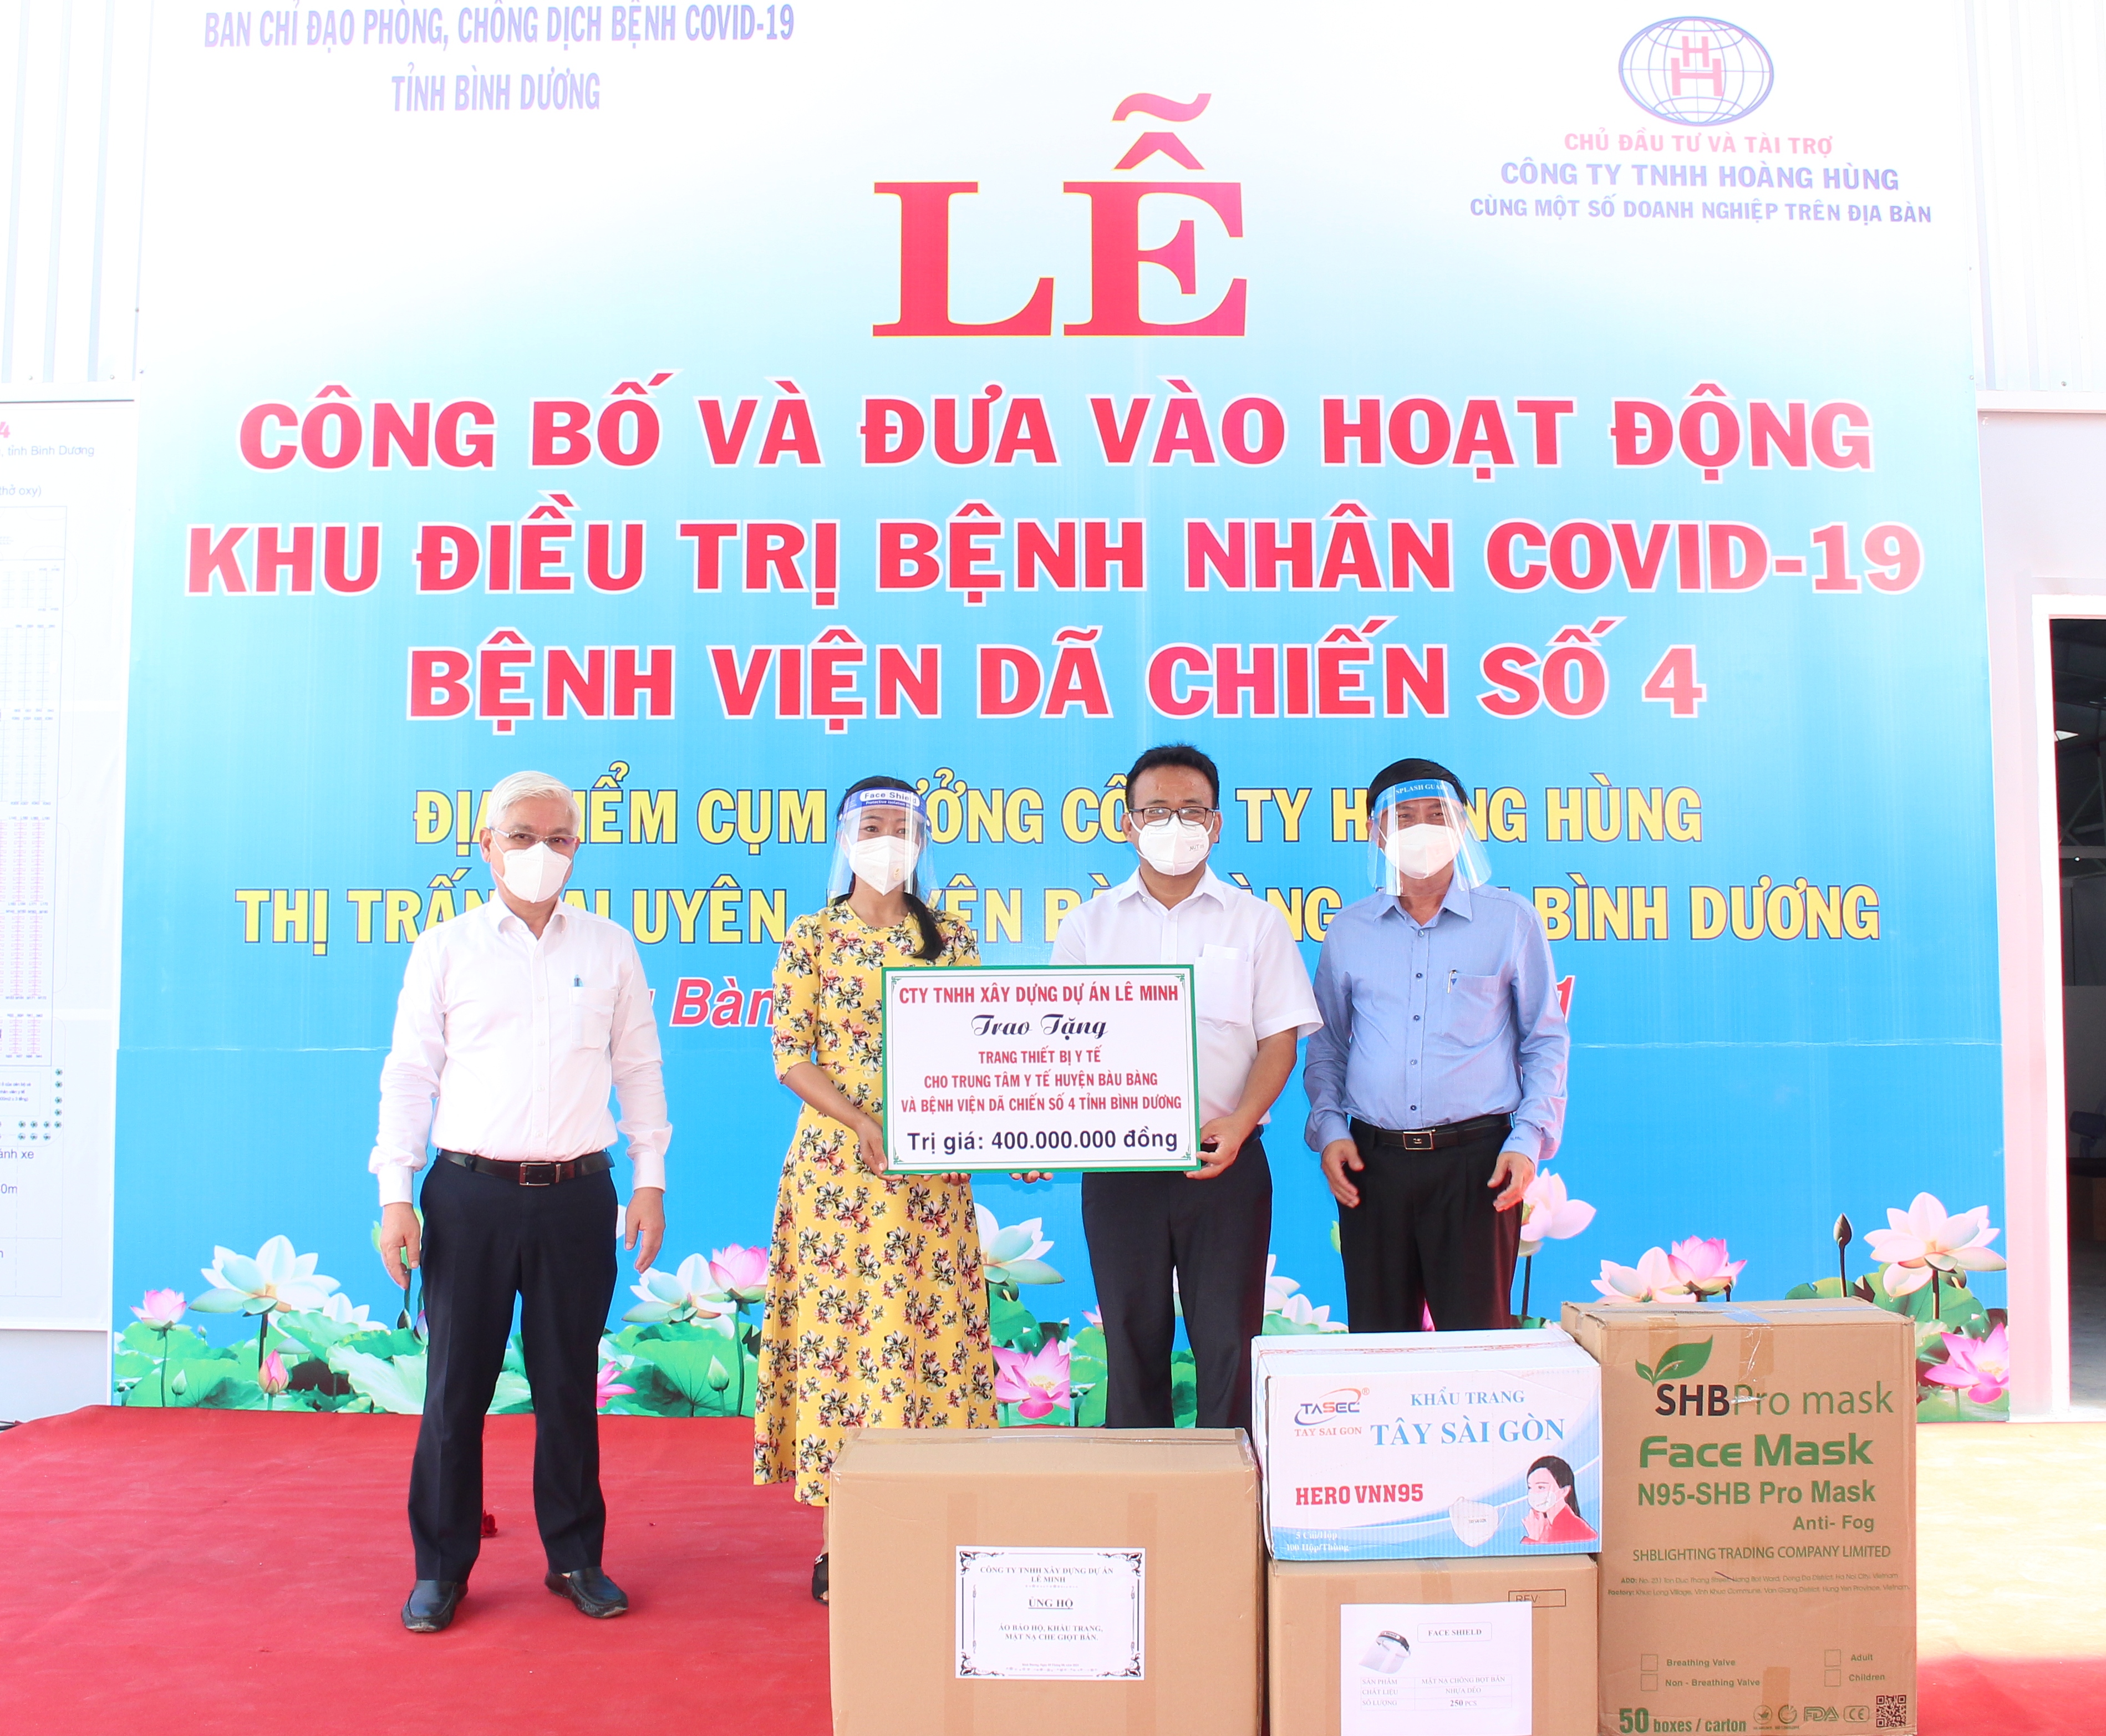 Công ty TNHH xây dựng dự án Lê Minh trao tặng cho Bệnh viện dã chiến số 4 trang thiết bị, vật tư trong công tác phòng, chống dịch với tổng số tiền 400.000.000 đồng